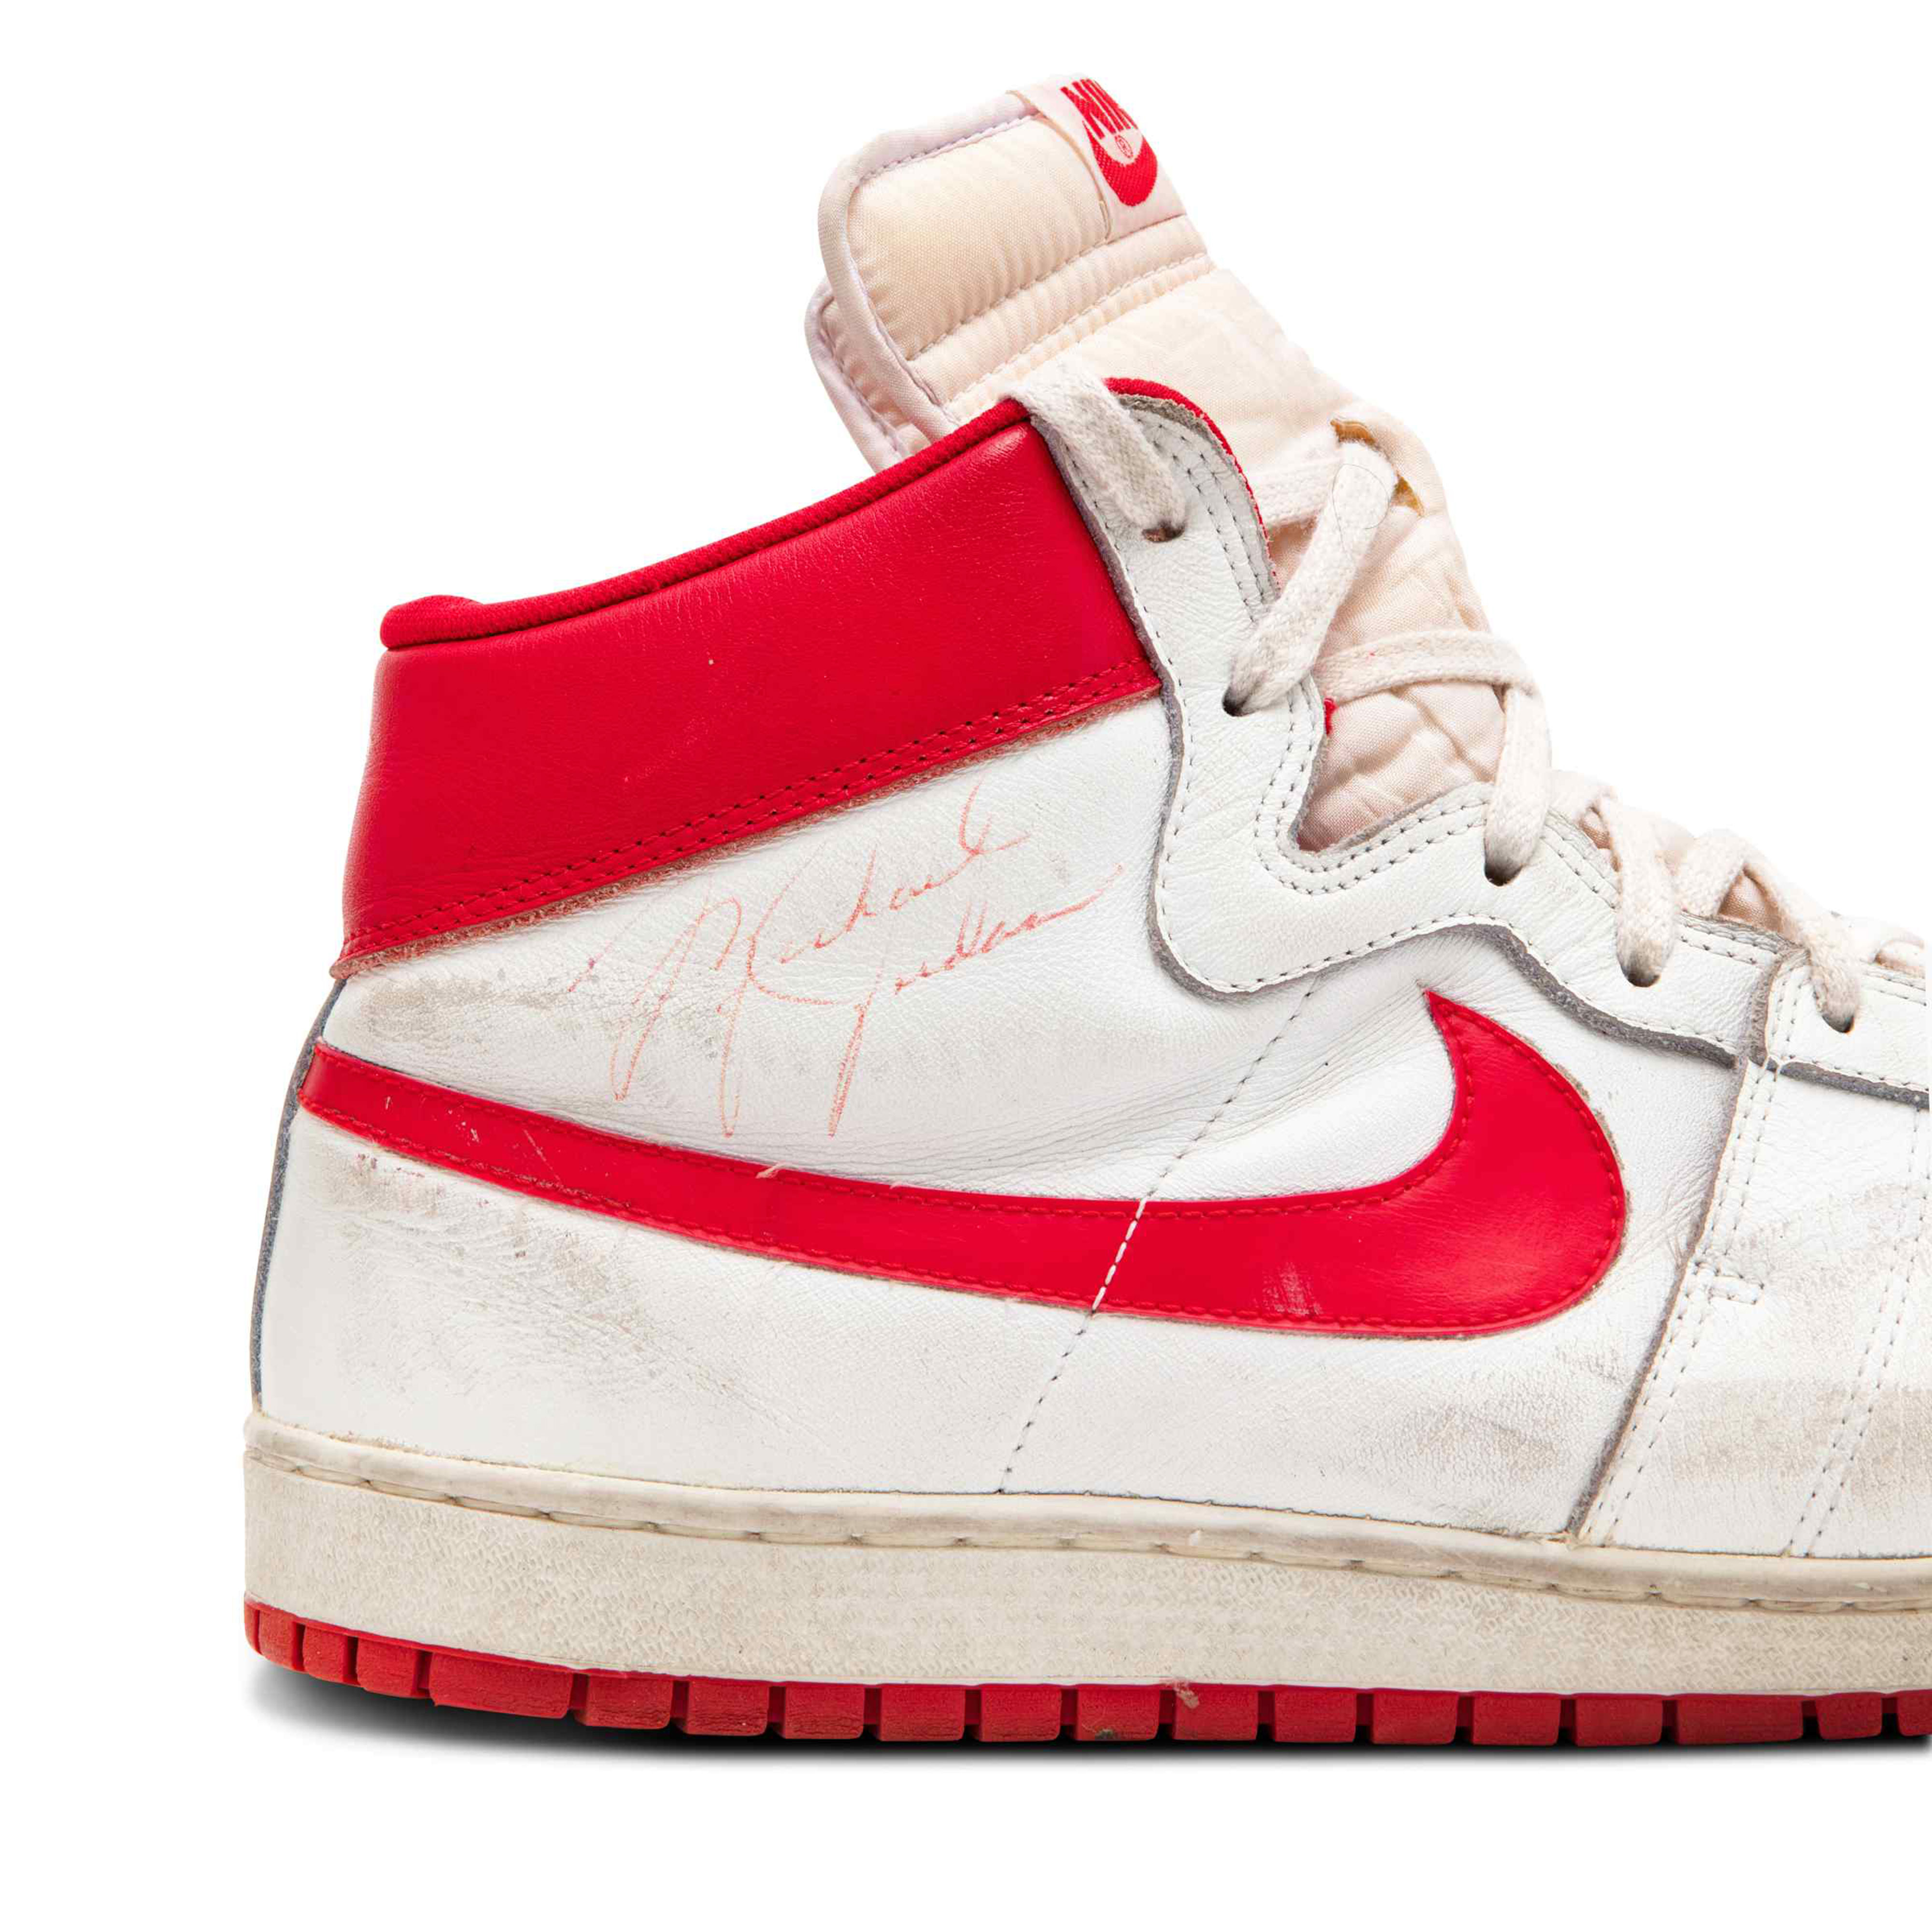 Michael Jordan's sneakers air jordan skate shoes sell for record-breaking $1.47 million